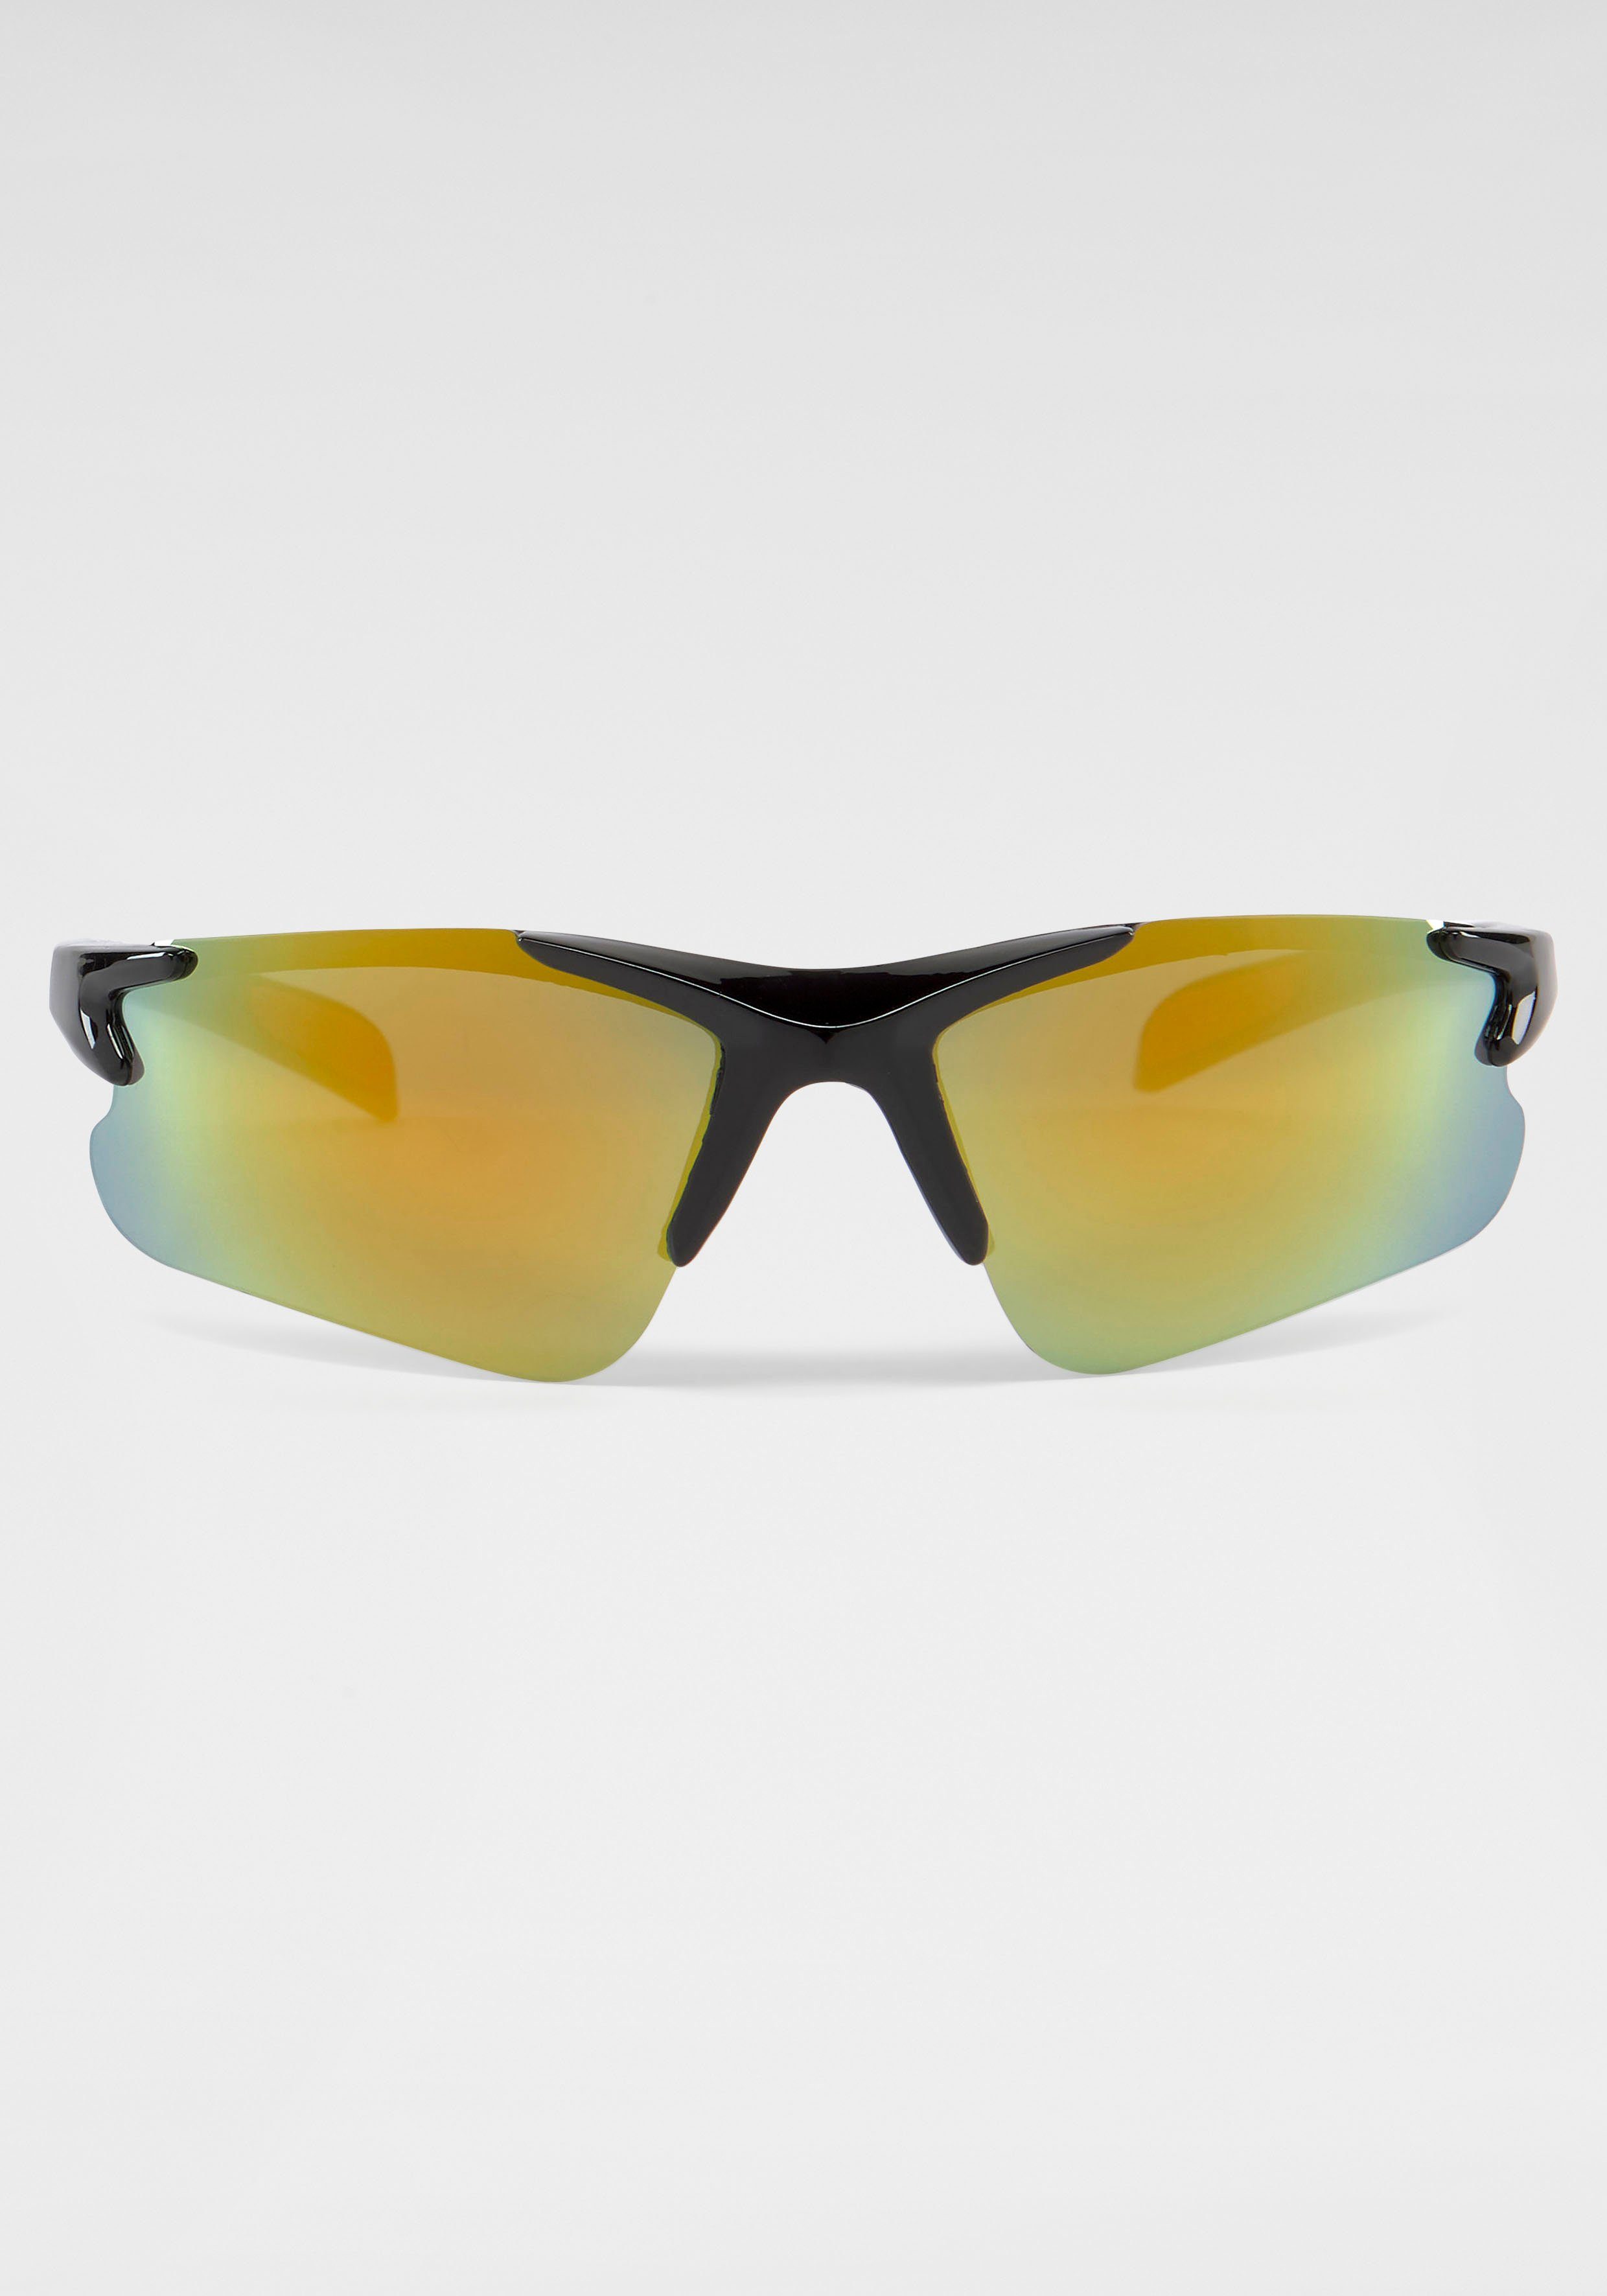 PRIMETTA Eyewear verspiegelten Sonnenbrille mit Gläsern